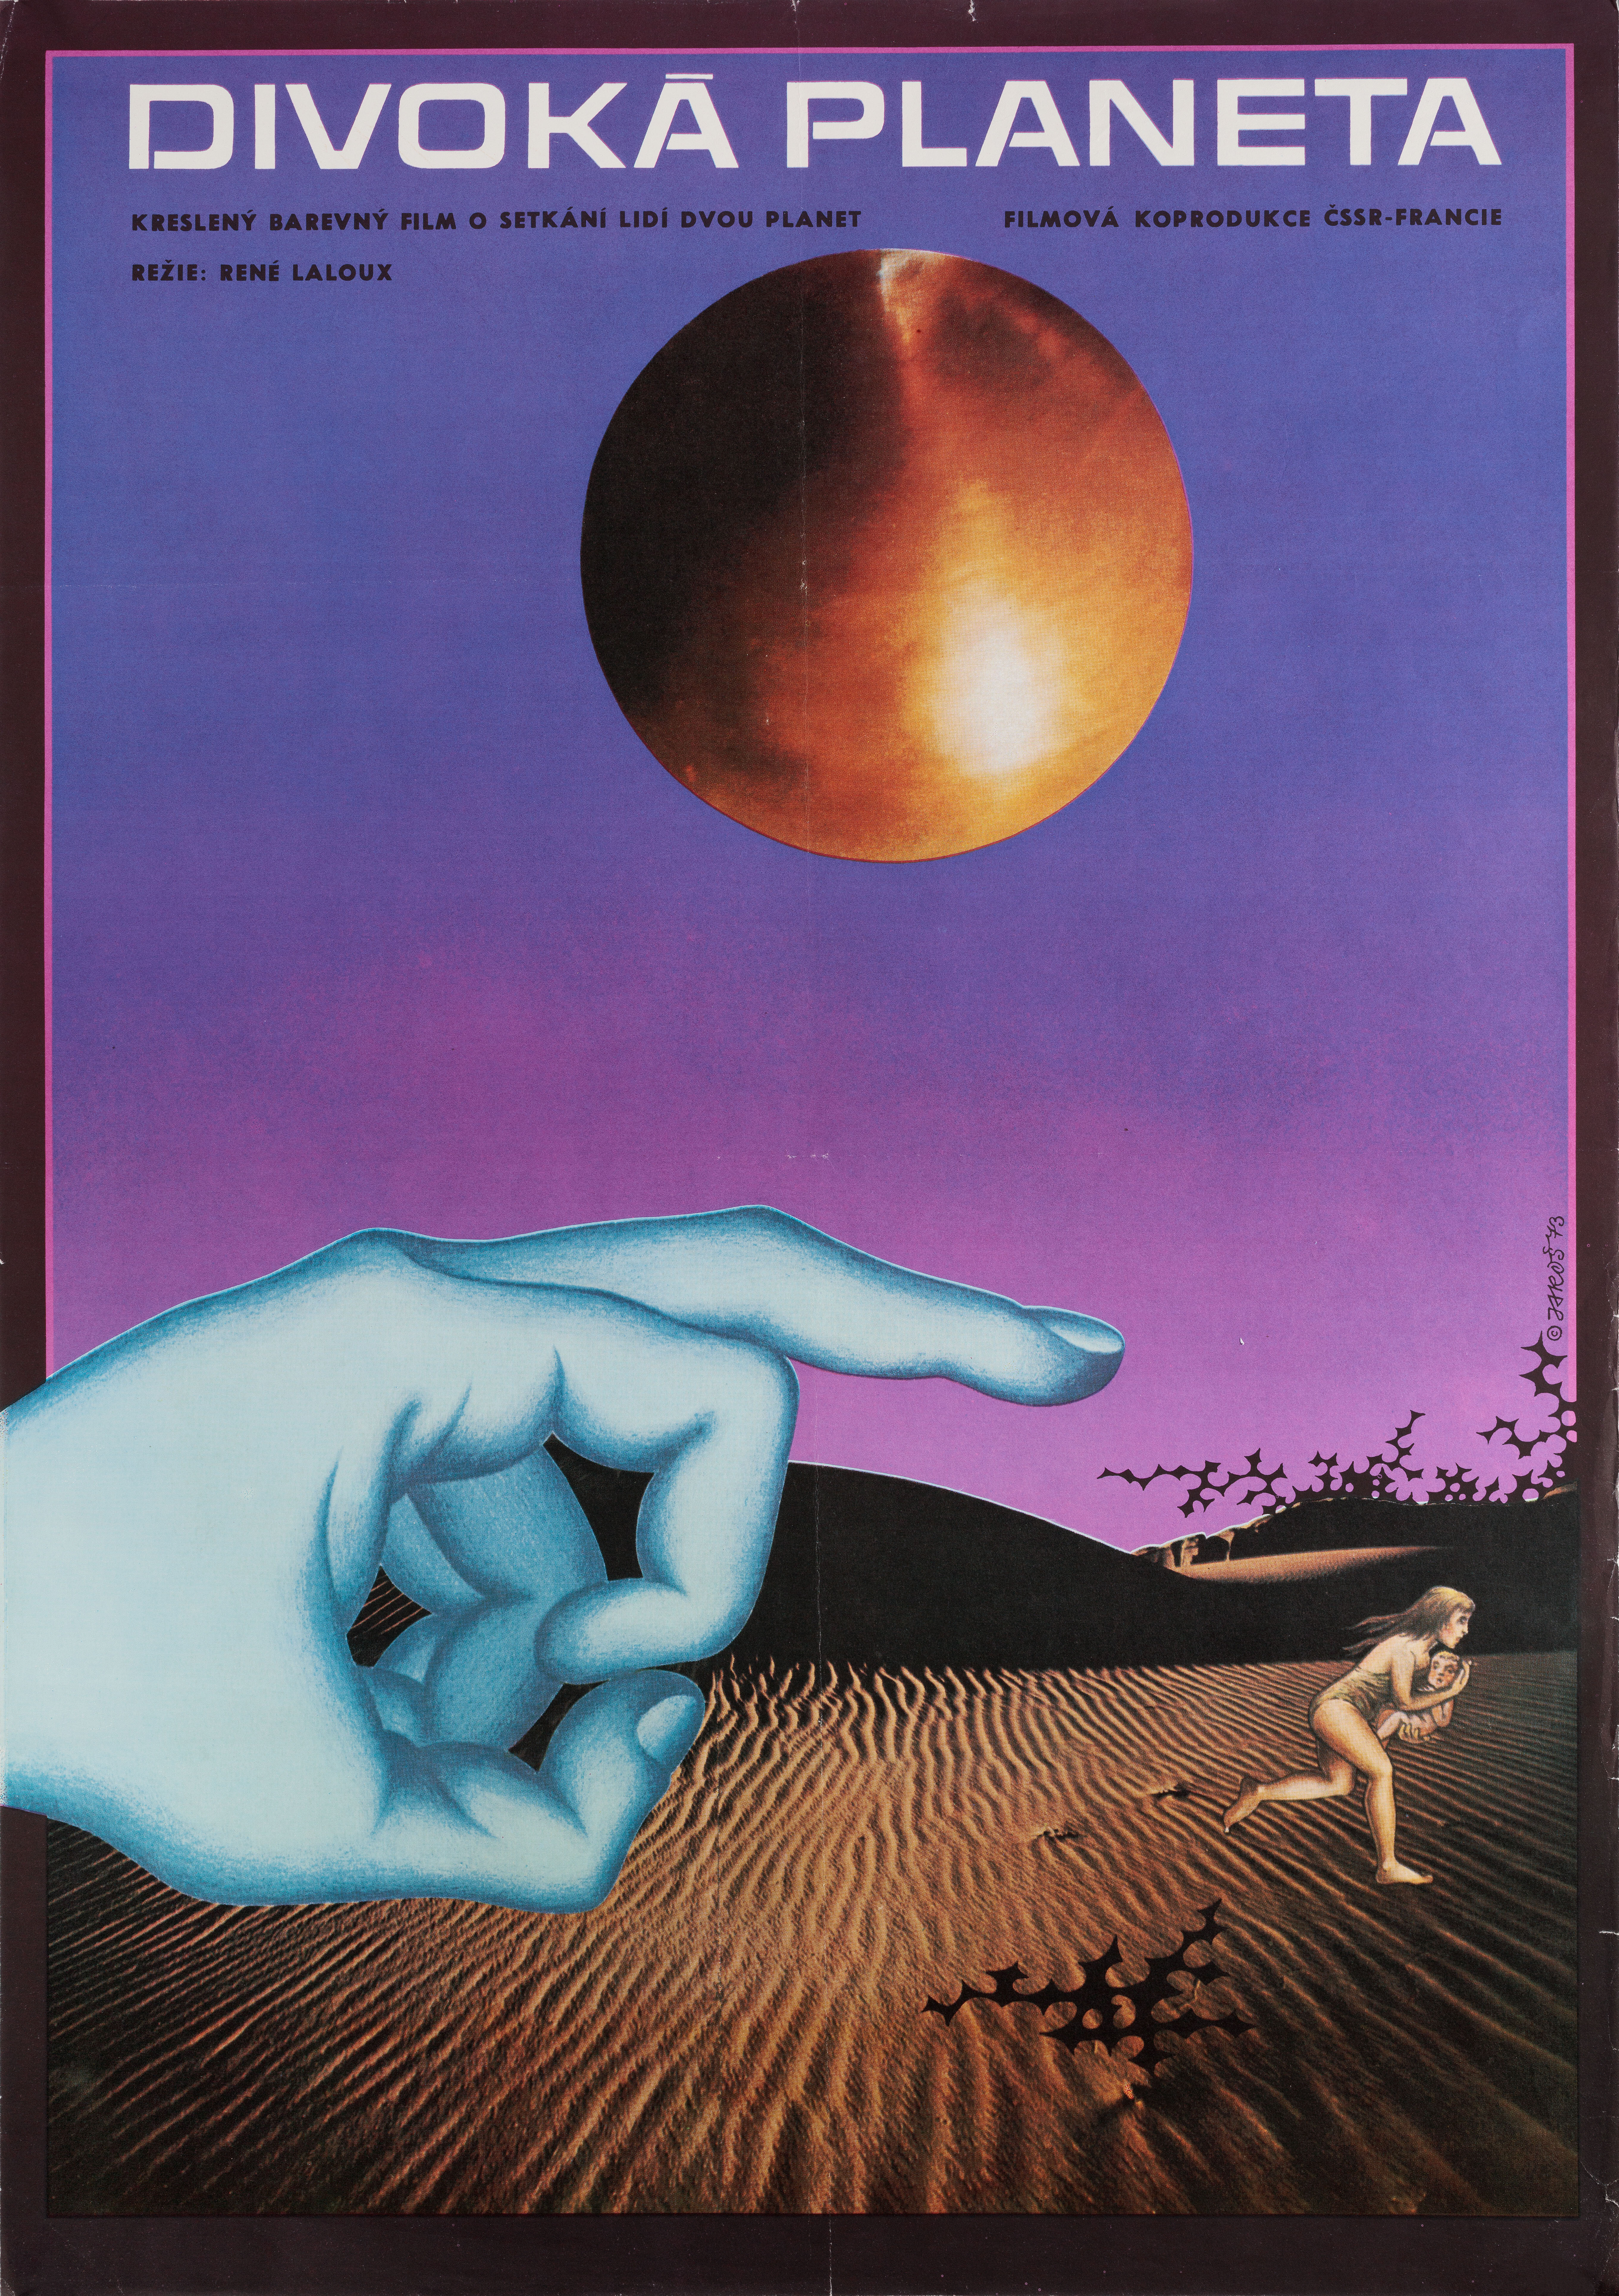 Дикая планета (Fantastic Planet, 1973), режиссёр Рене Лалу, чехословацкий постер к фильму, автор Алексей Ярош (графический дизайн, 1973 год)